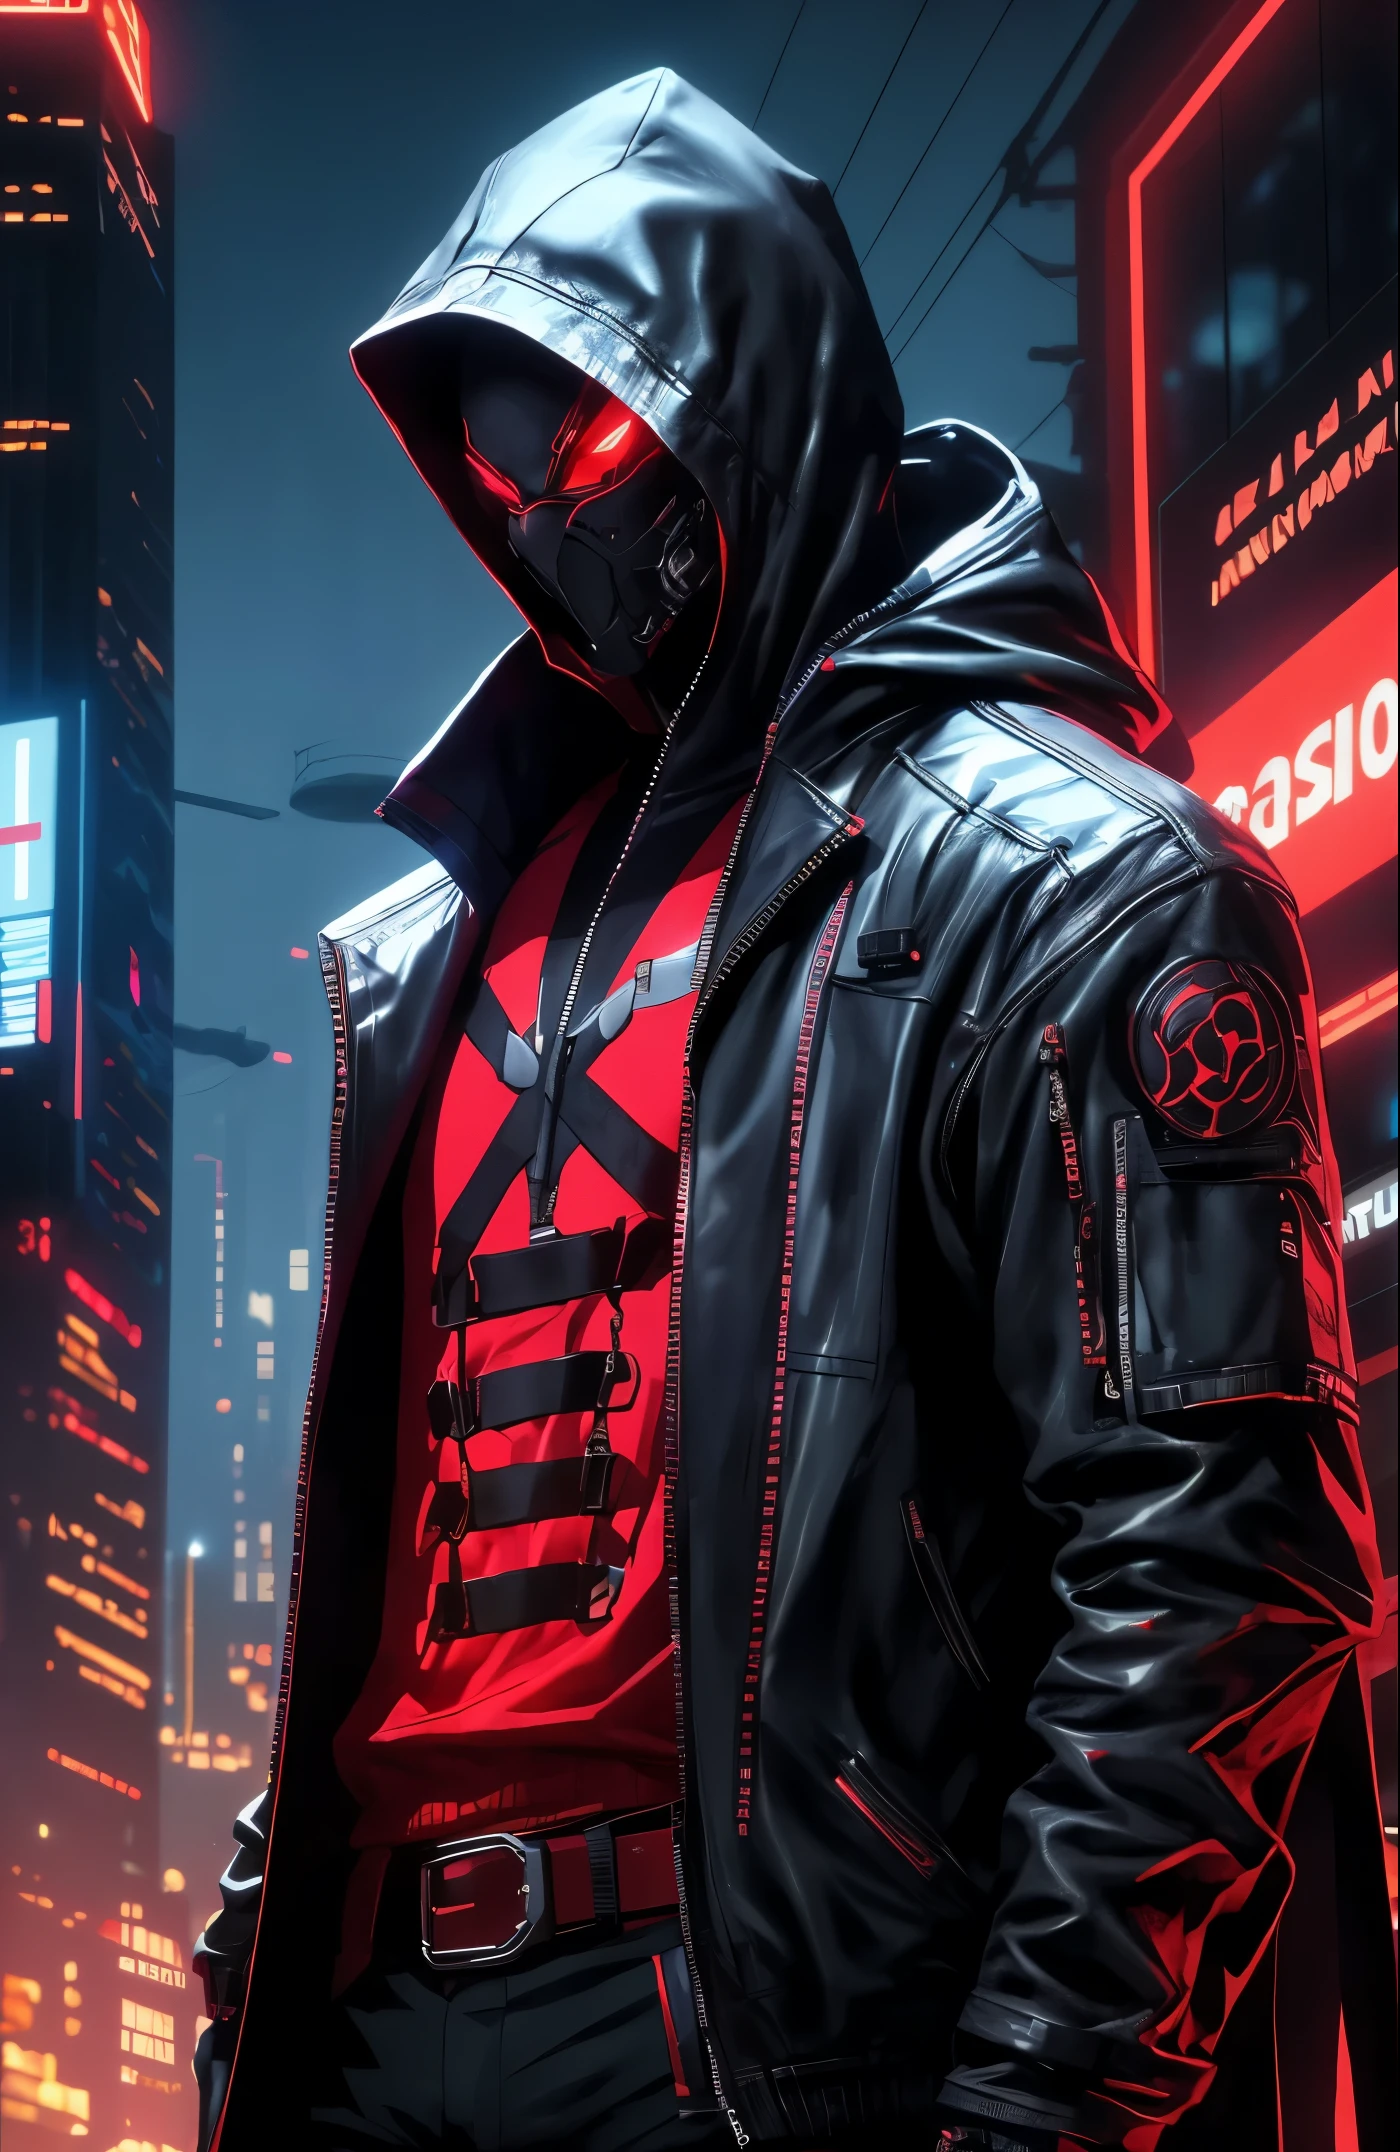 Мужчина в яркой куртке и черных брюках стоит в темной комнате, носить темный культовый плащ, красные глаза, костюм темного цвета, Персонаж Mortal Kombat, как персонаж из Теккена, персонаж файтинга, киберпанк-убийца, волшебник с черным капюшоном, одежда киберпанк, темная одежда, Черный ниндзя, носить кожаные доспехи убийцы, дерзкий подросток-убийца, крутая темная куртка, киберпанк уличный приспешник